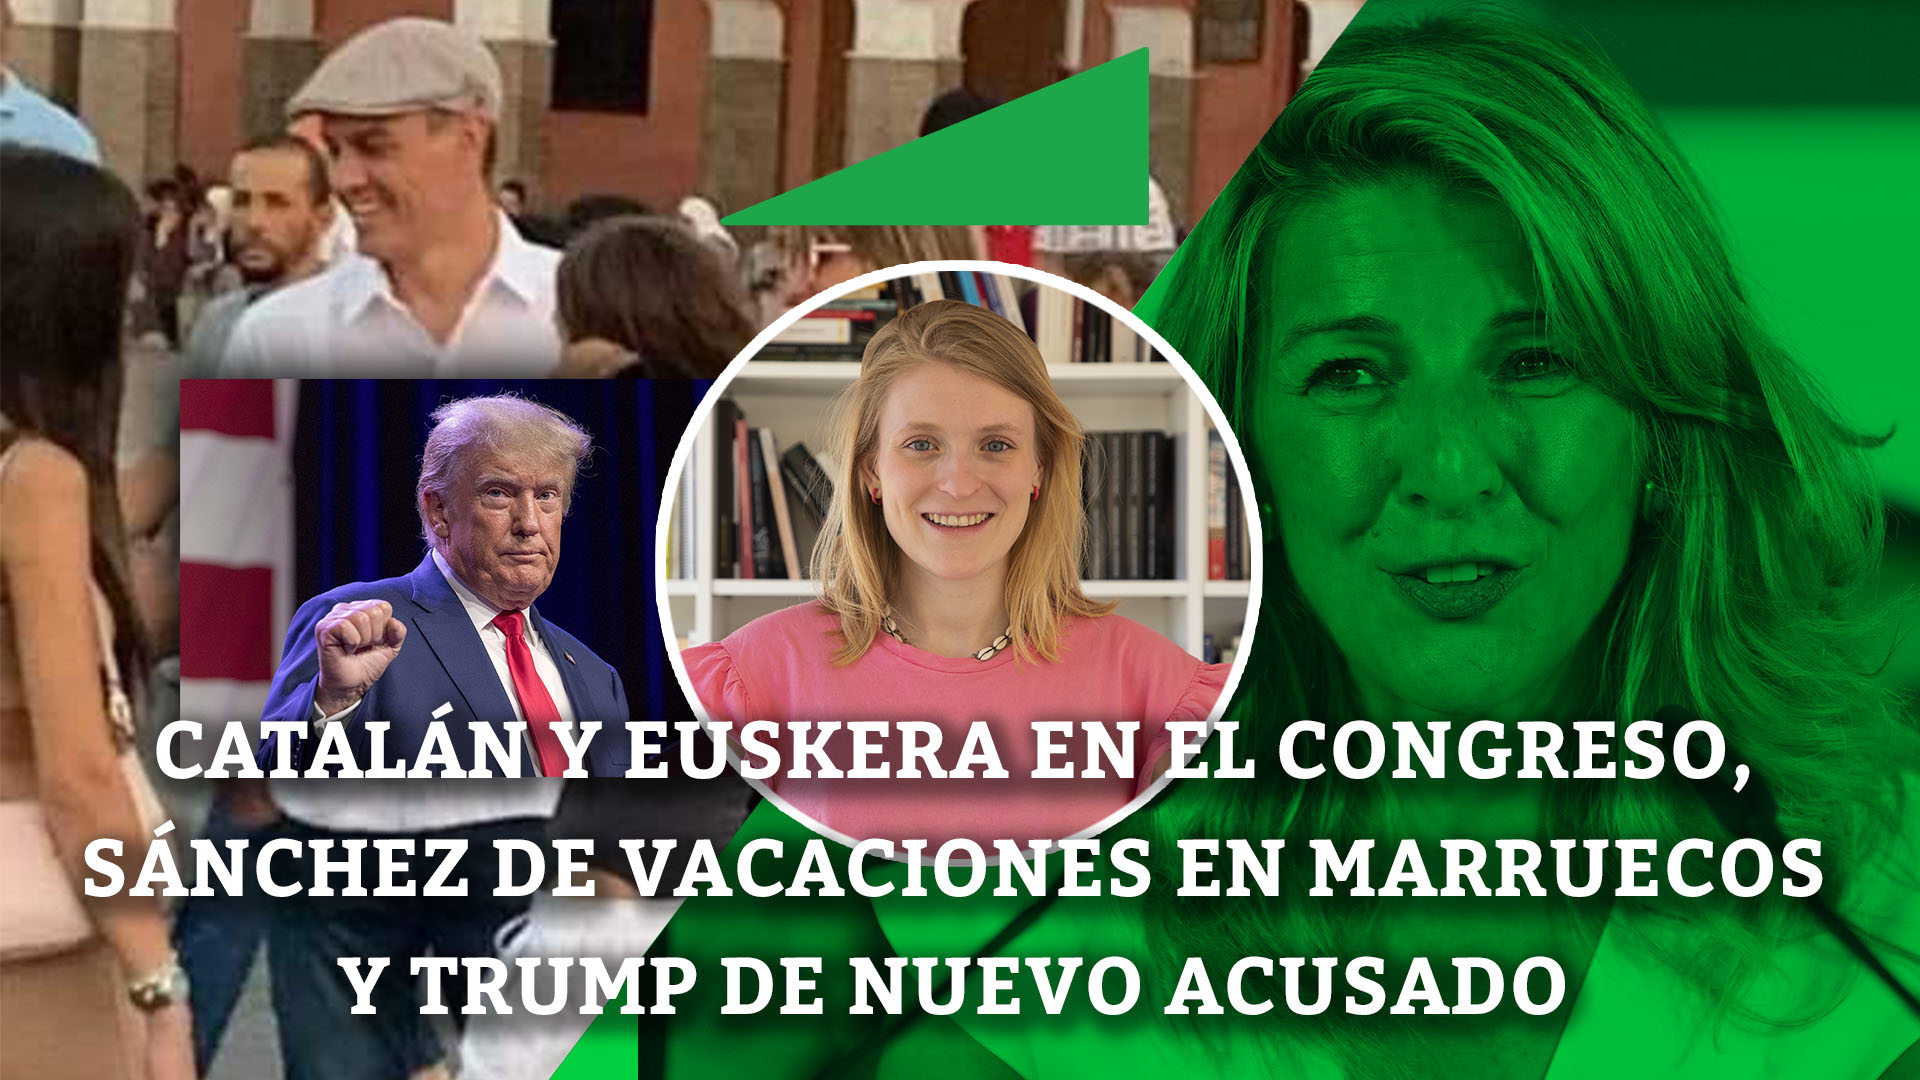 Catalán y euskera en el Congreso, Sánchez de vacaciones en Marruecos y Trump de nuevo acusado